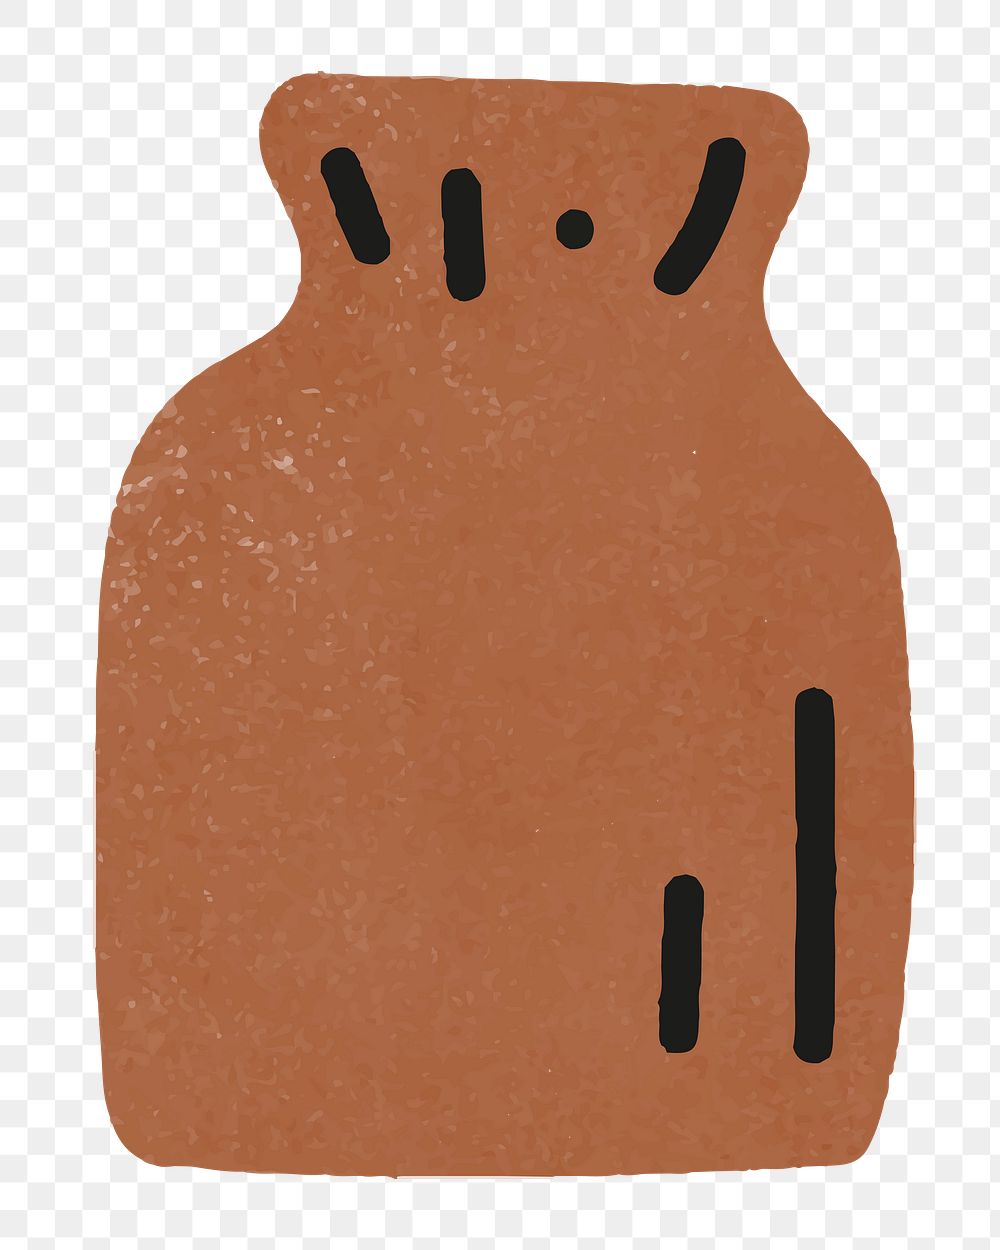 Brown vase png sticker, transparent background